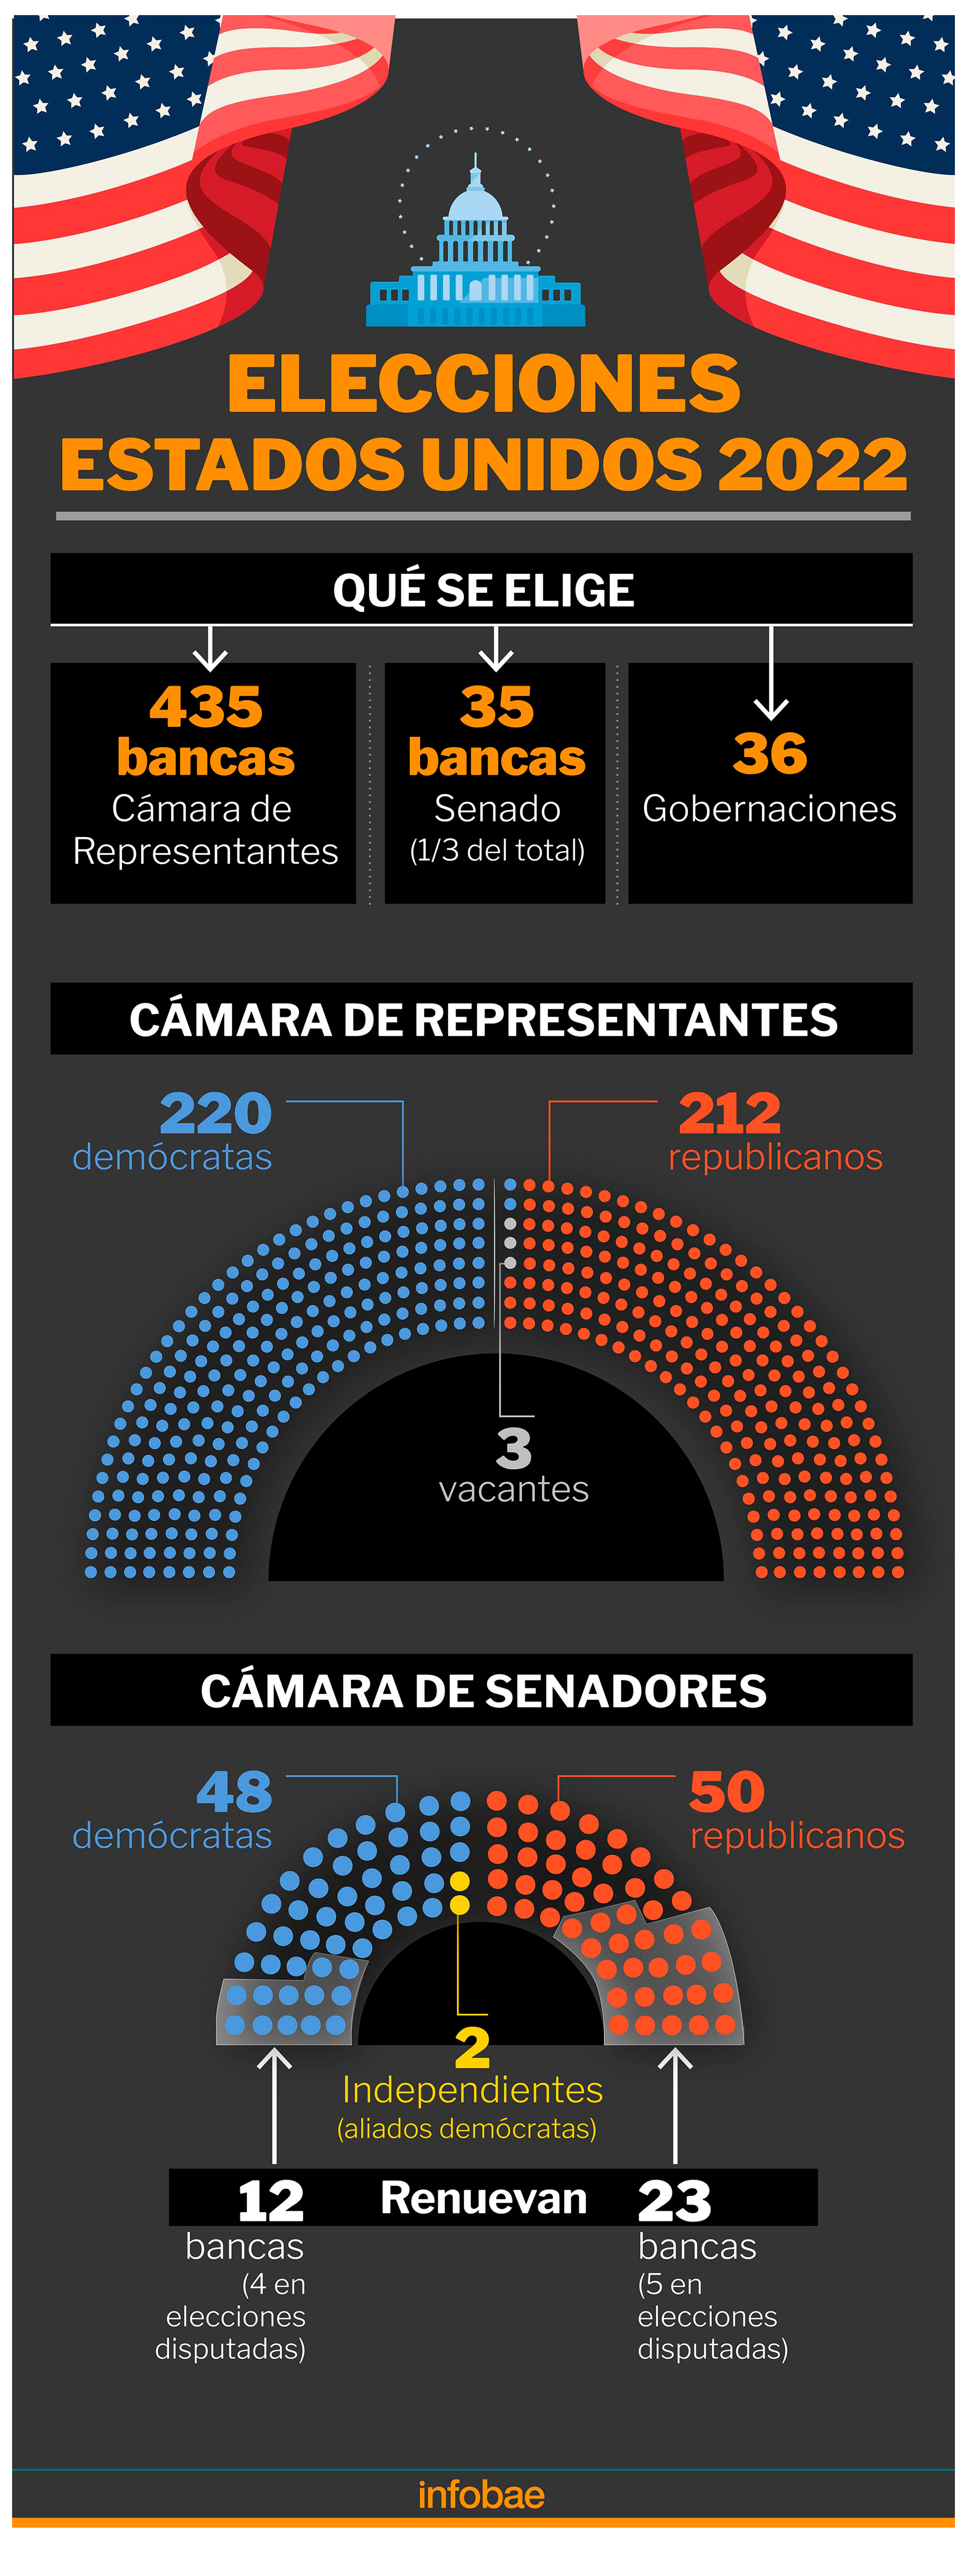 Elections 2022 in America (Marcelo Regalado)